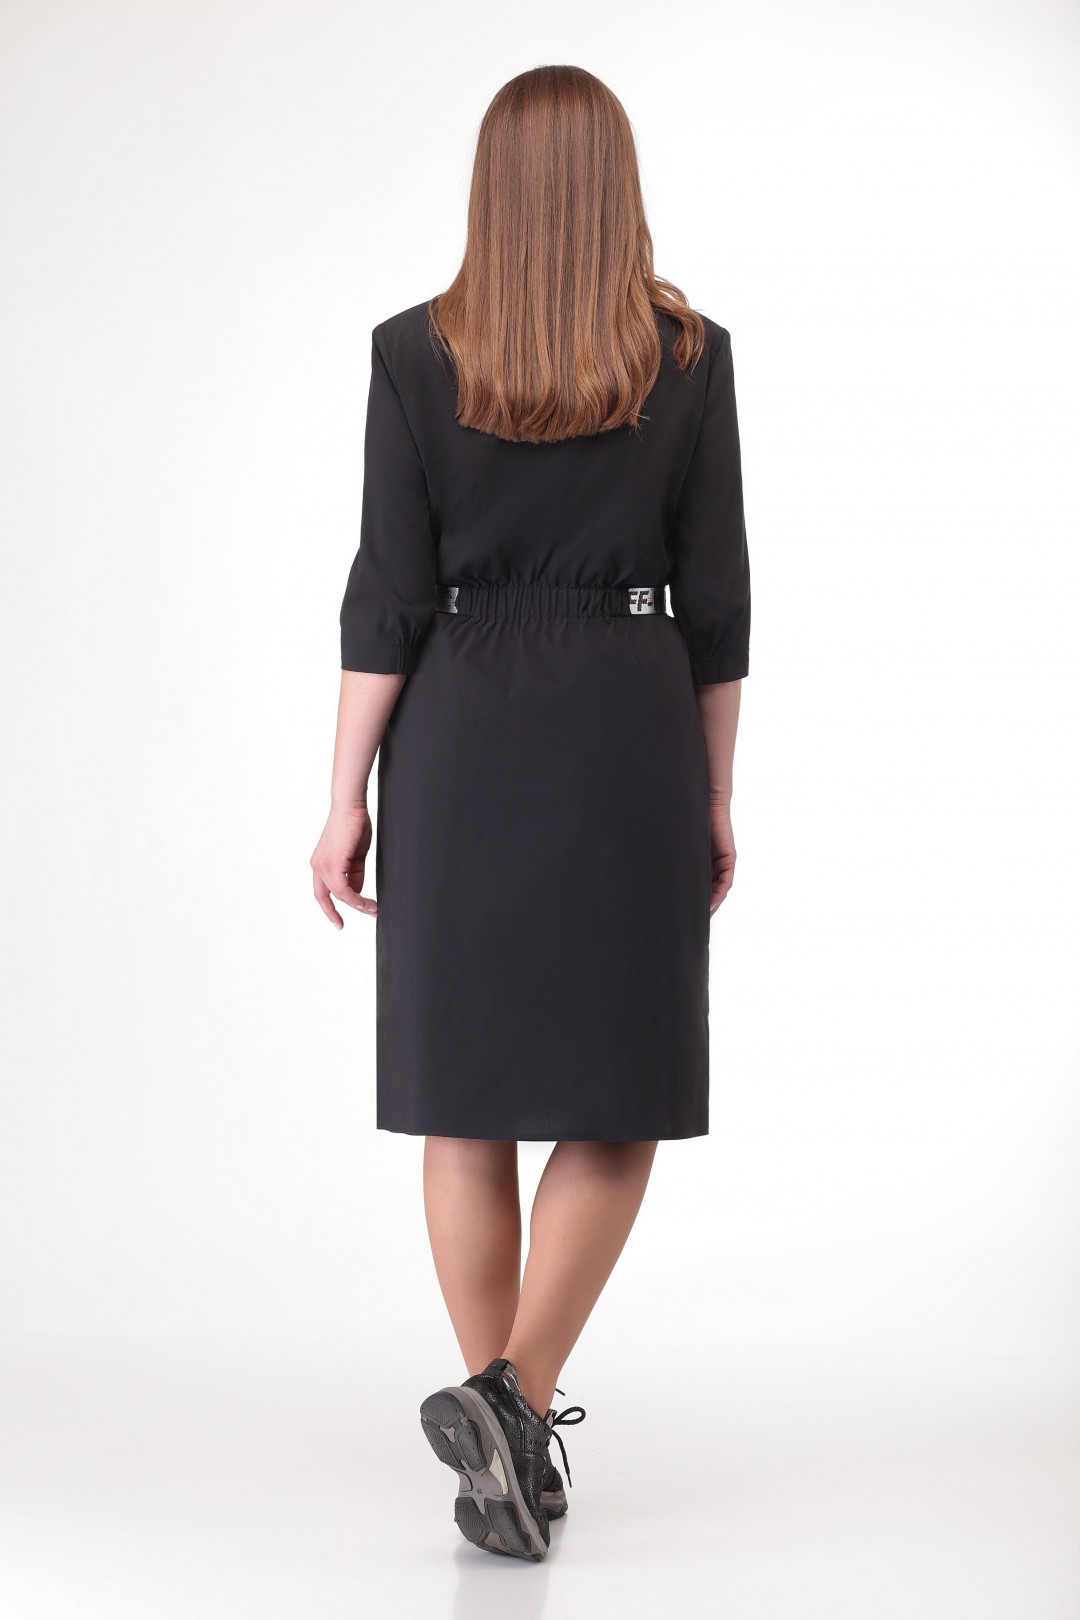 Платье Карина Делюкс В-316 черный